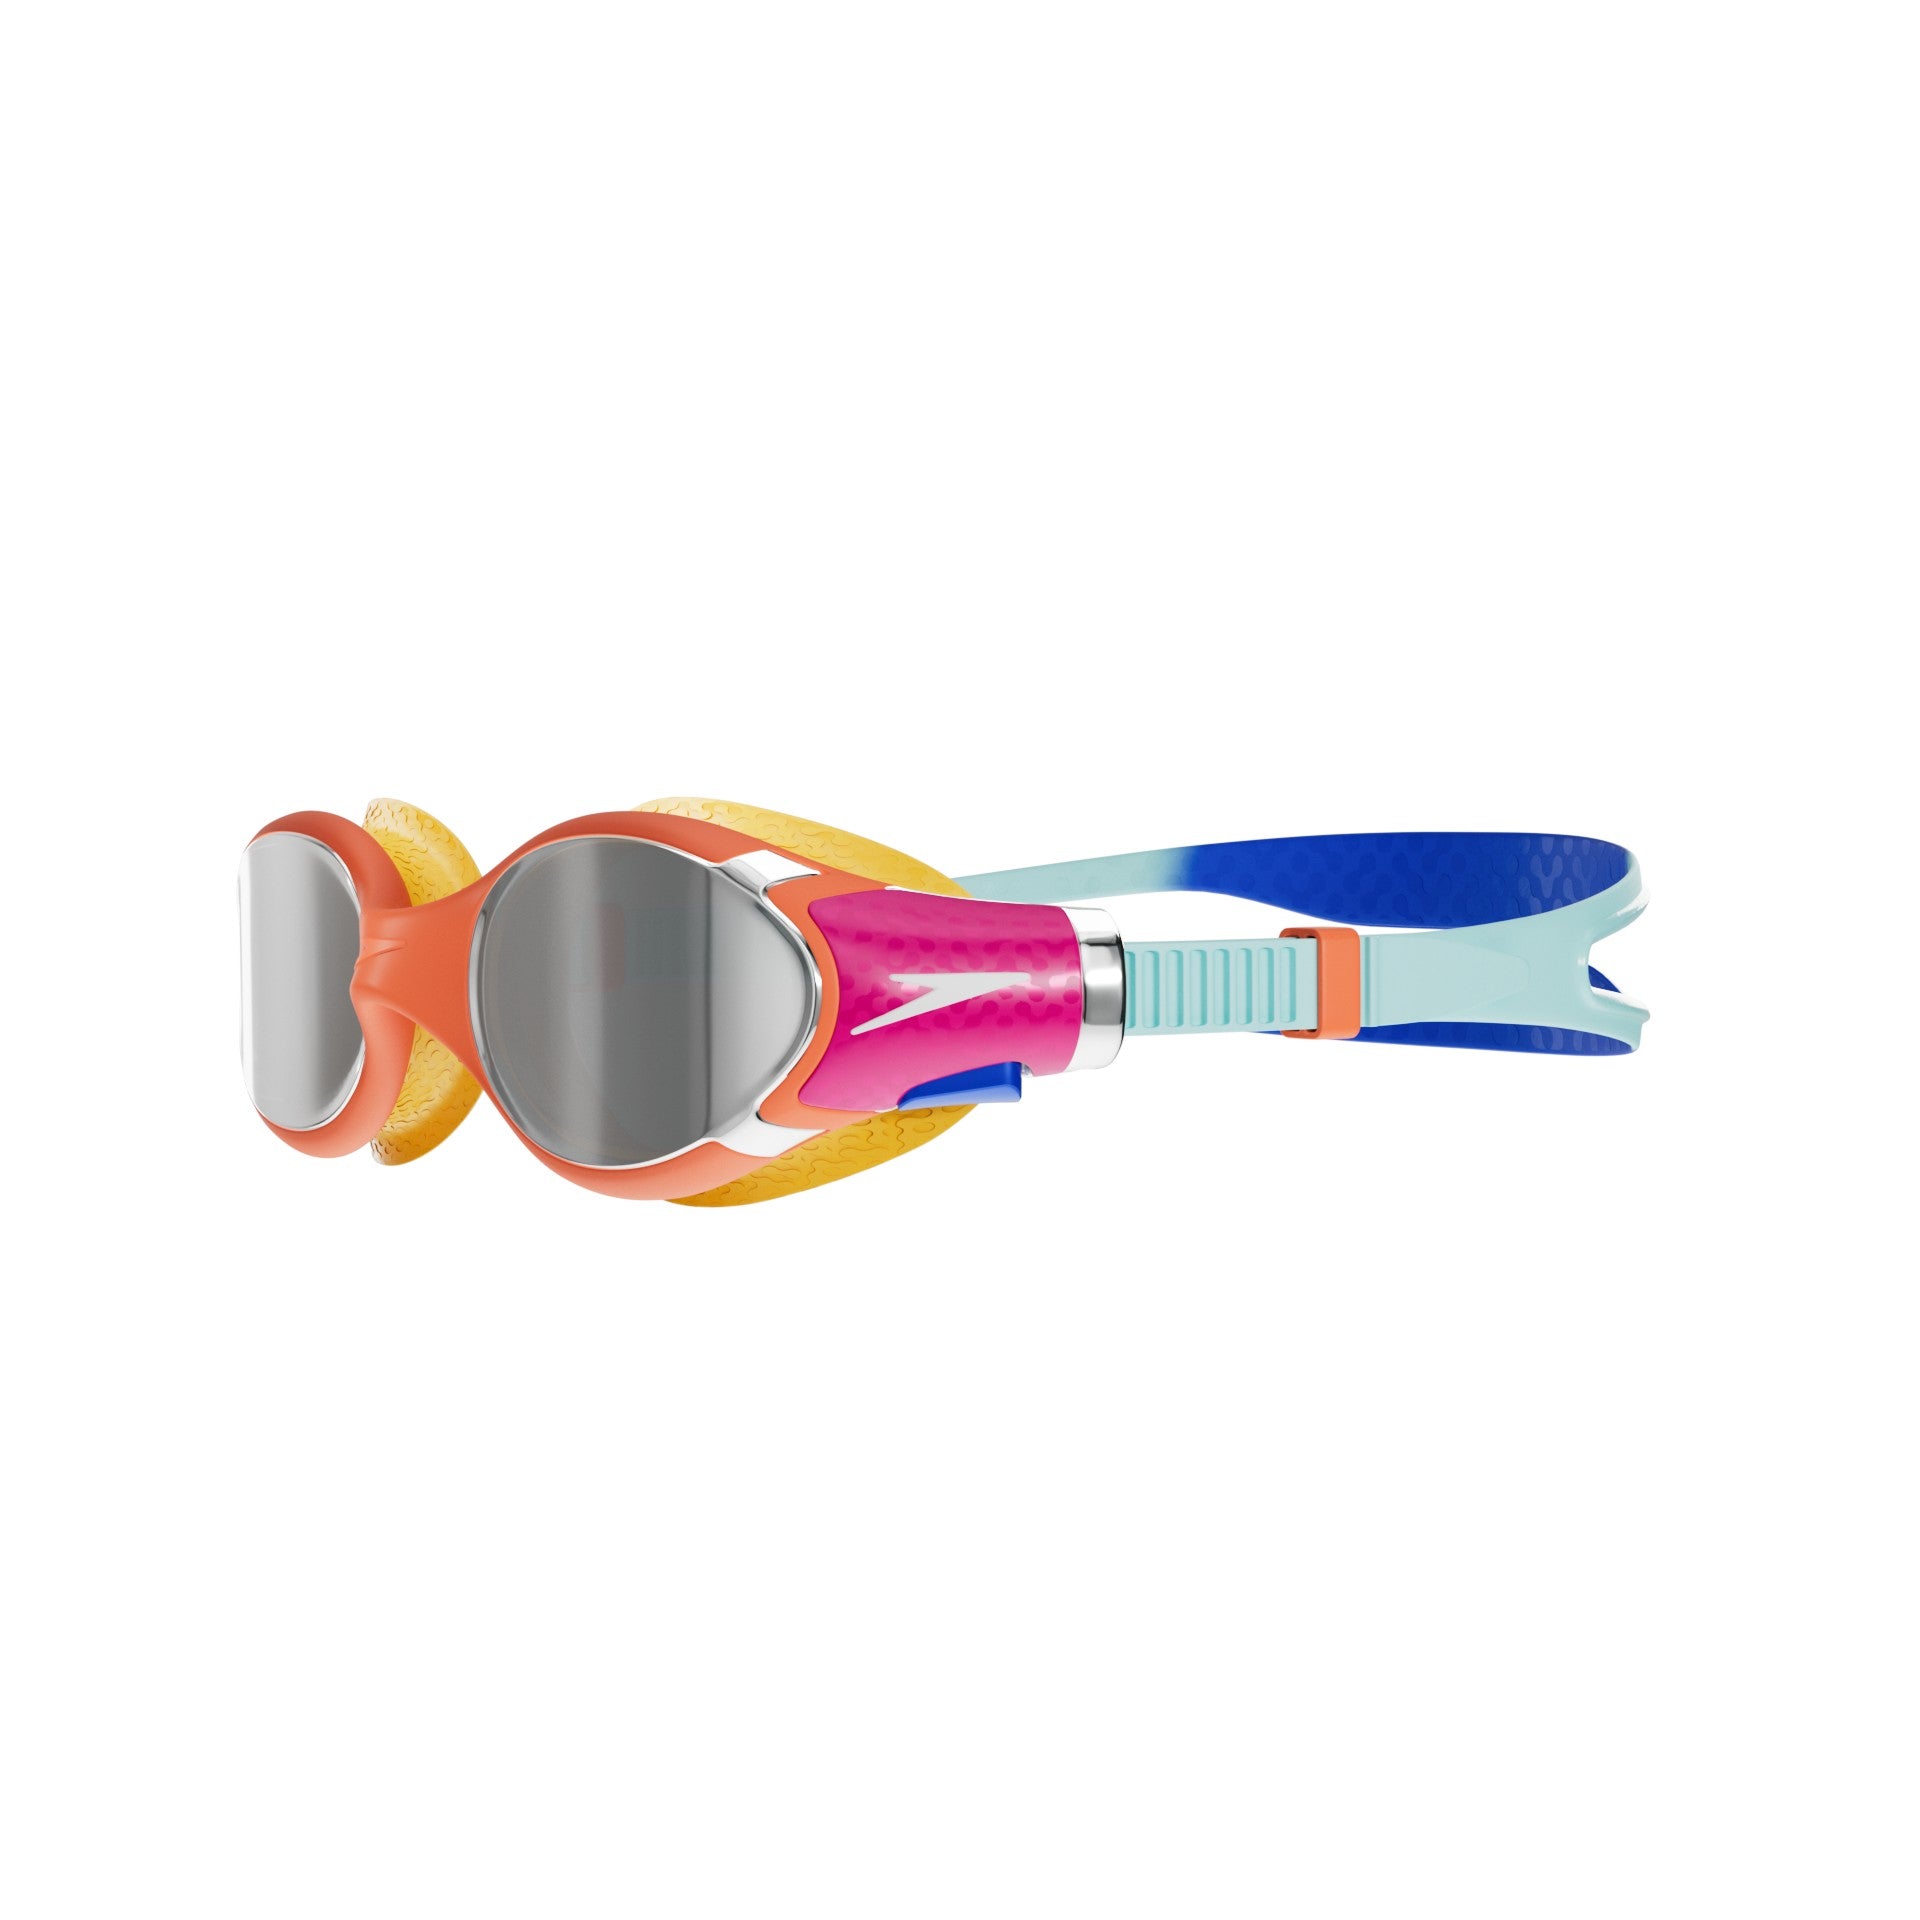 Biofuse 2.0 Mirror Junior Swimming Goggle